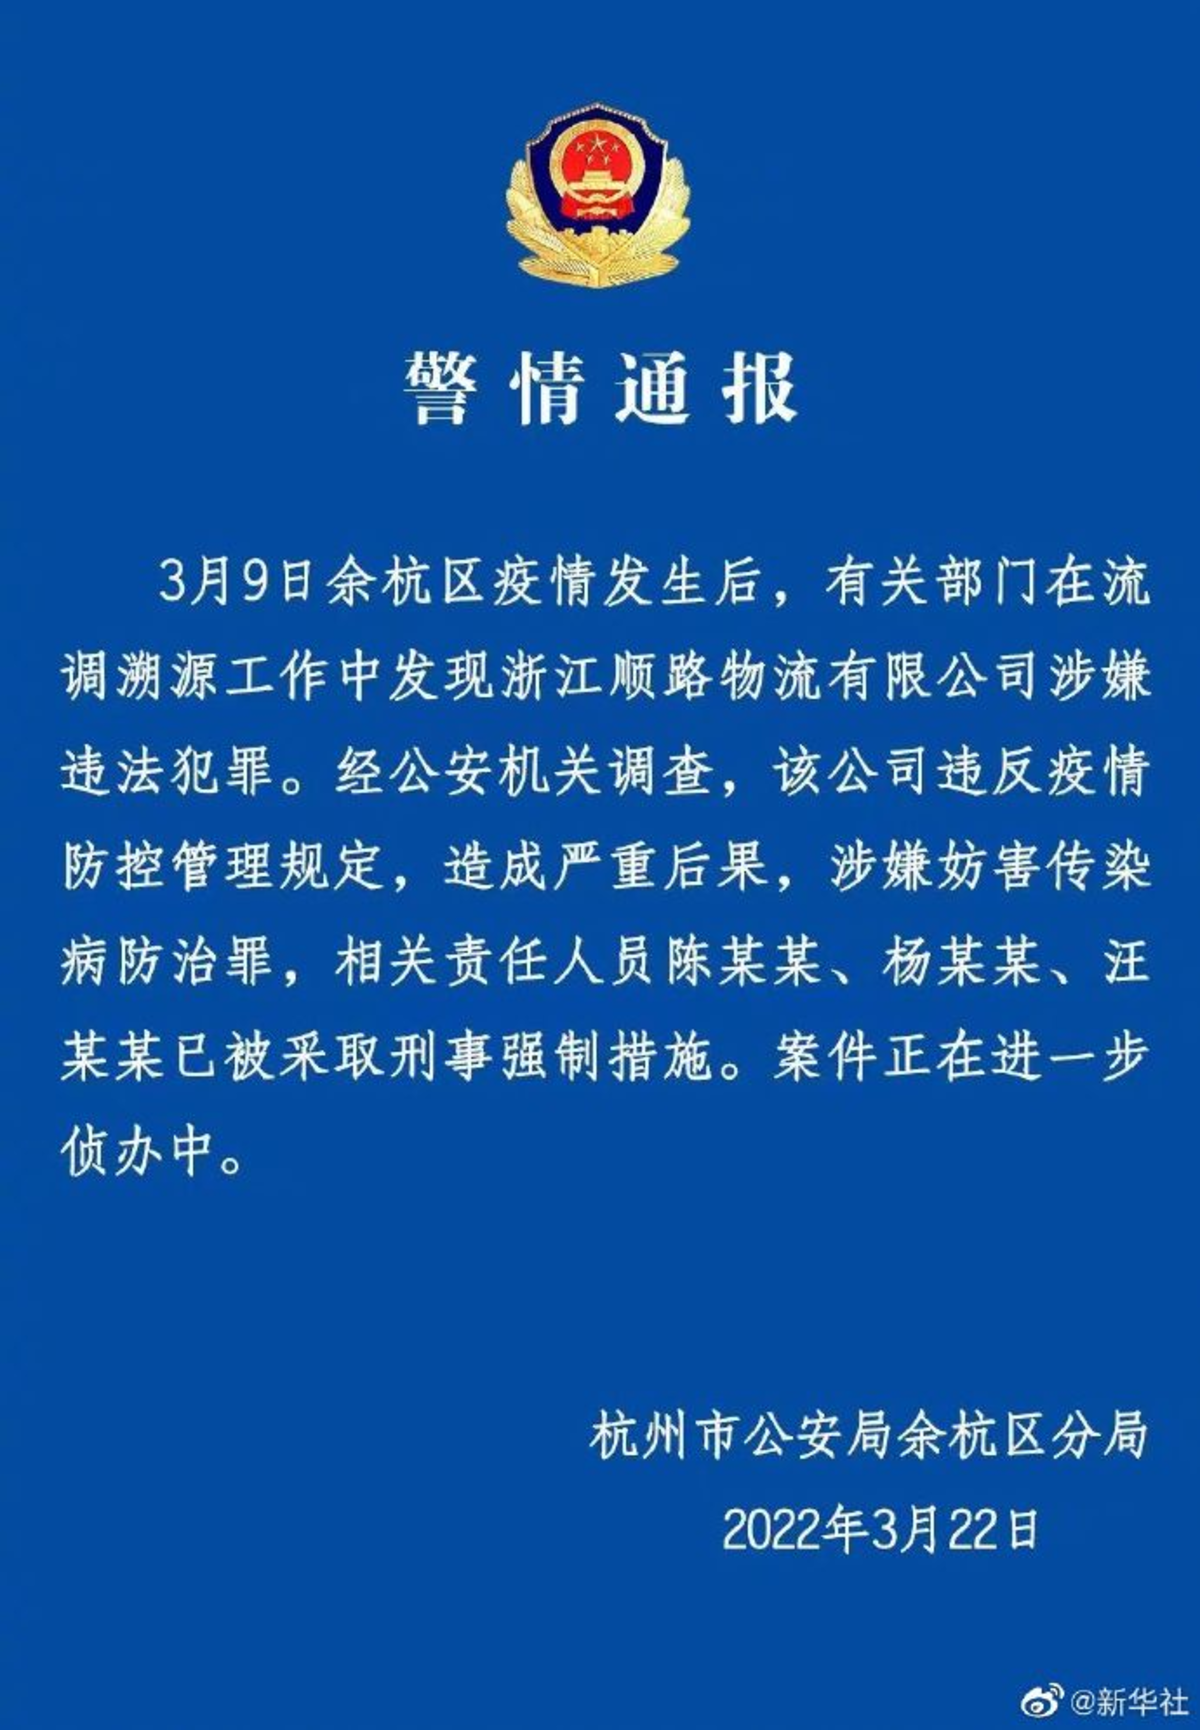 杭州一物流公司因涉嫌妨害传染病防治罪 多名人员被刑拘